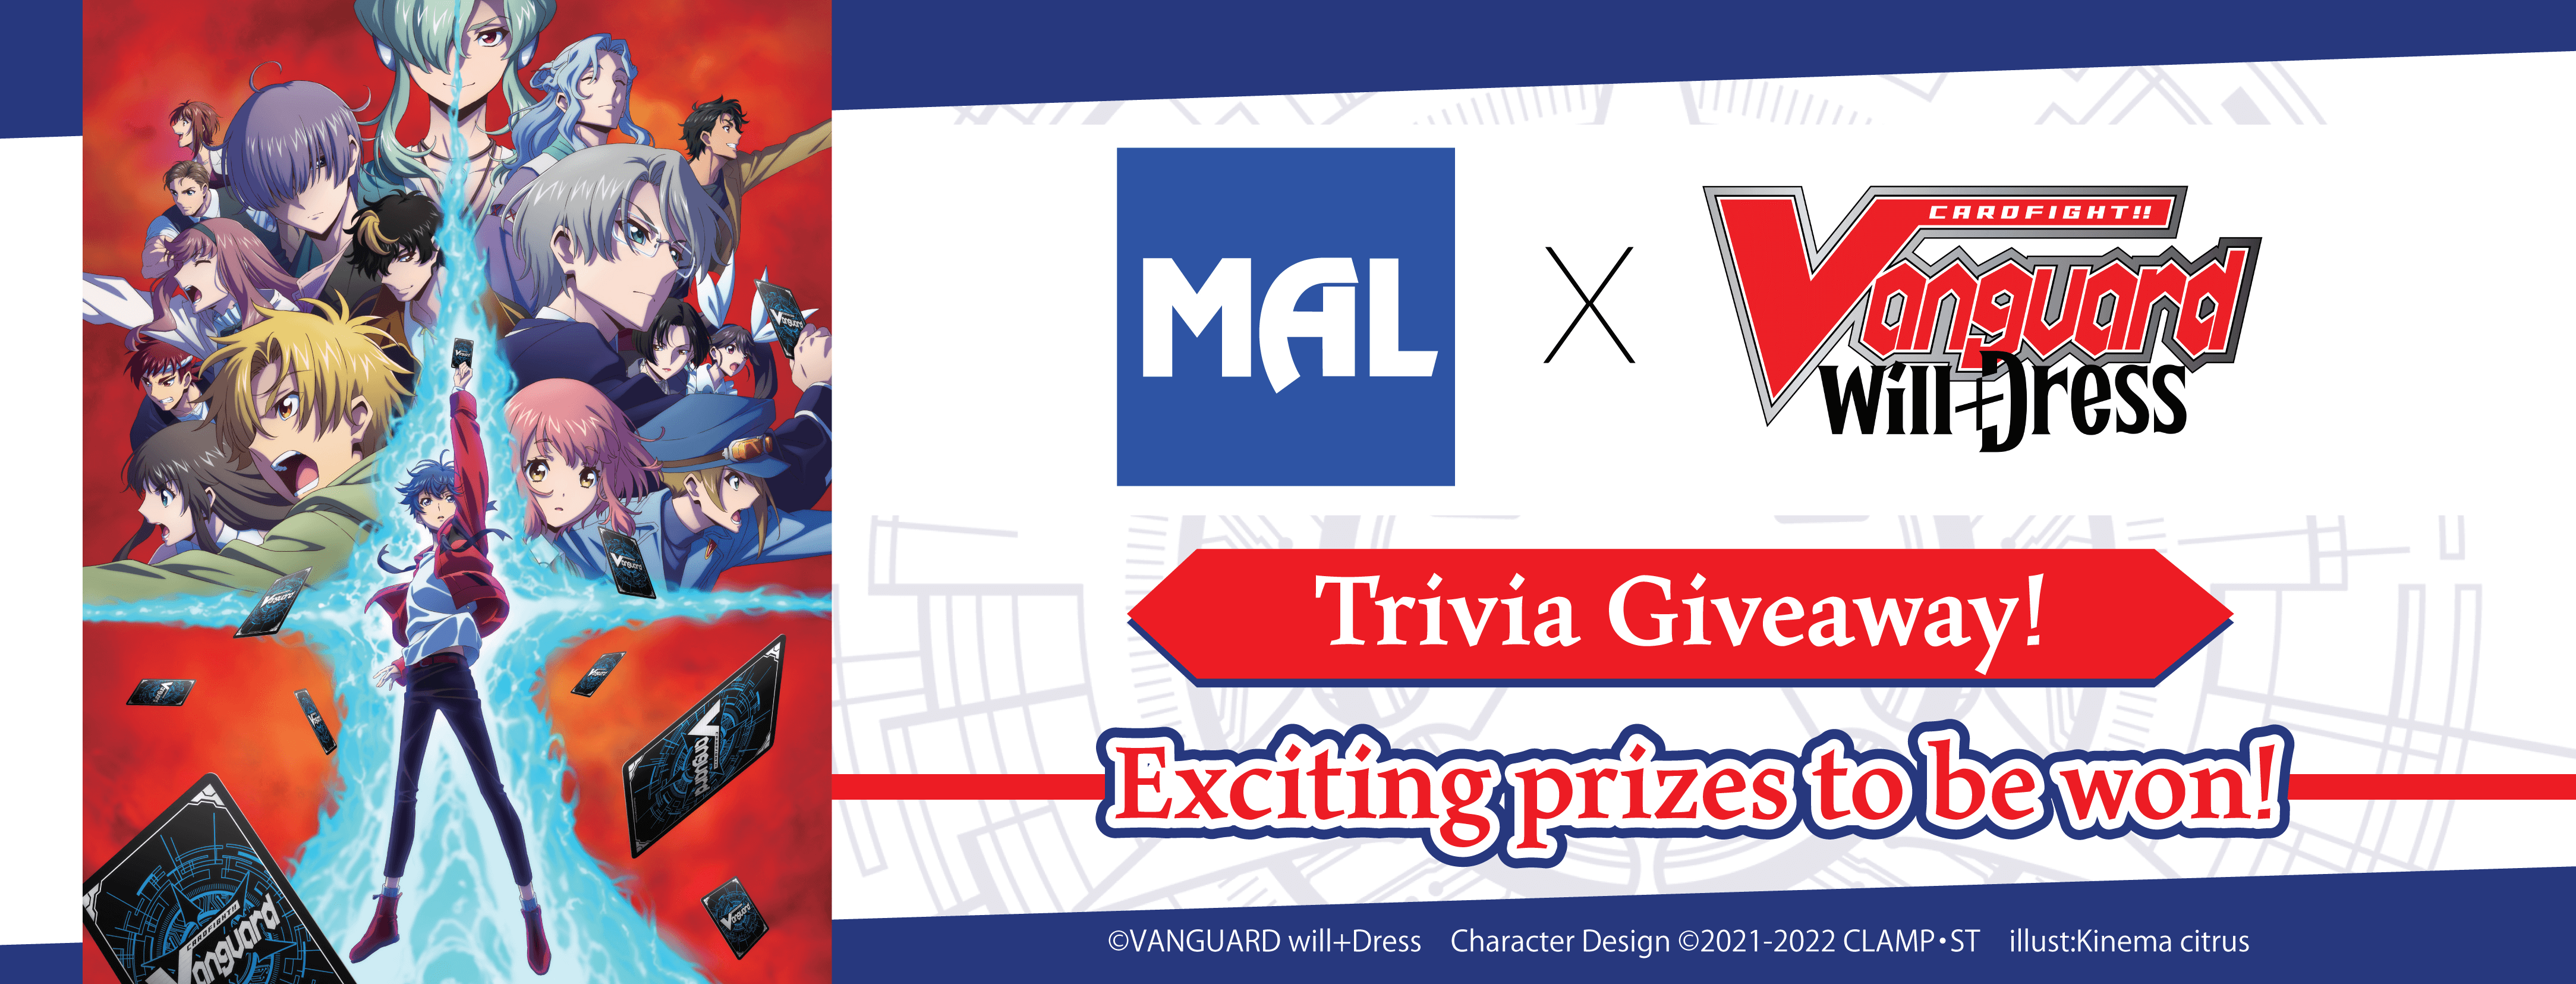 MAL x CARDFIGHT!! VANGUARD Will+Dress Trivia Giveaway!